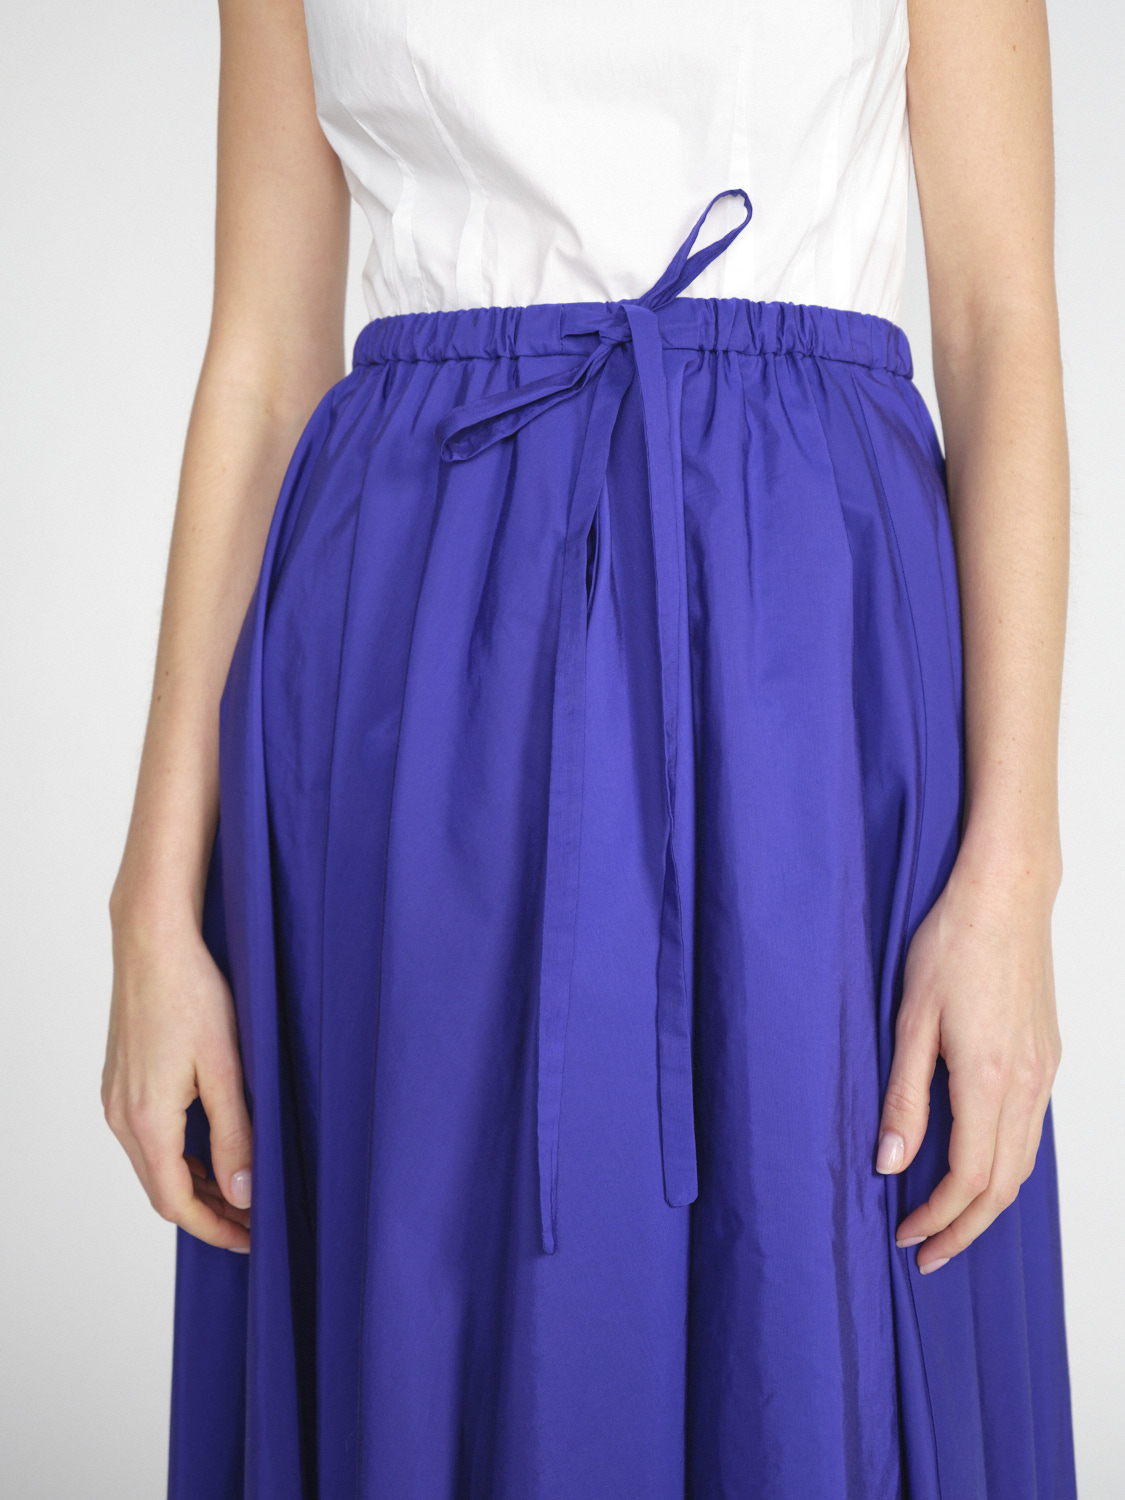 Odeeh Admiral - Taffeta skirt in midi length  purple 36